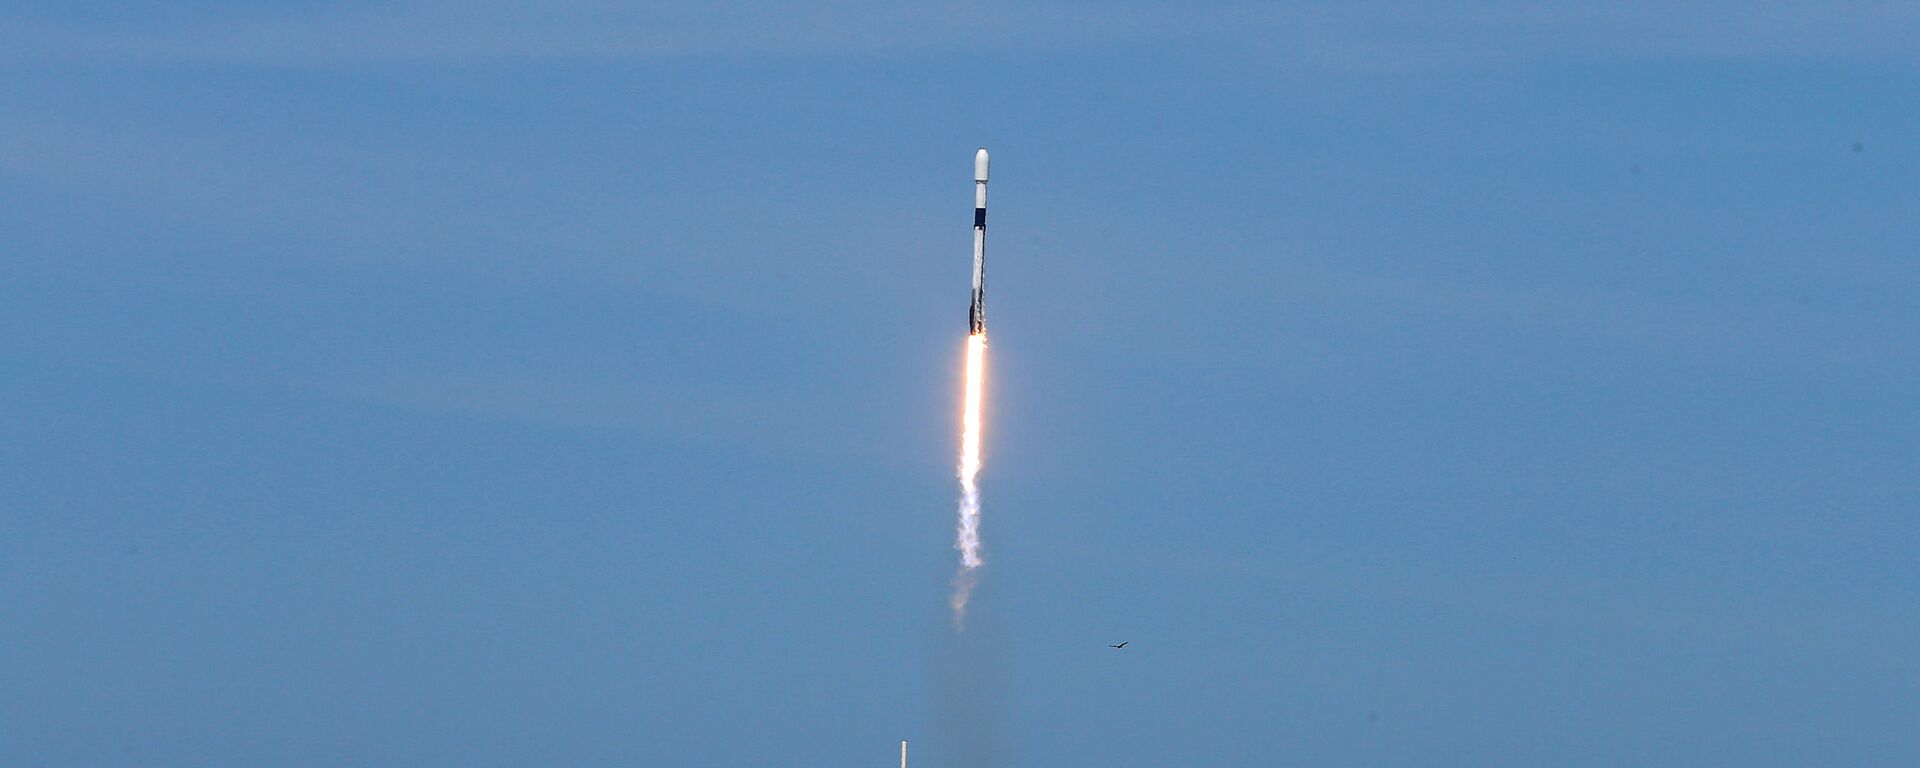 Starlink uydu ağının 6'ncı halkası 60 uydu, SpaceX üretimi Falcon 9 roketiyle ABD'nin Florida eyaletindeki Cape Canaveral Üssü'nden fırlatıldı. - Sputnik Türkiye, 1920, 26.01.2022